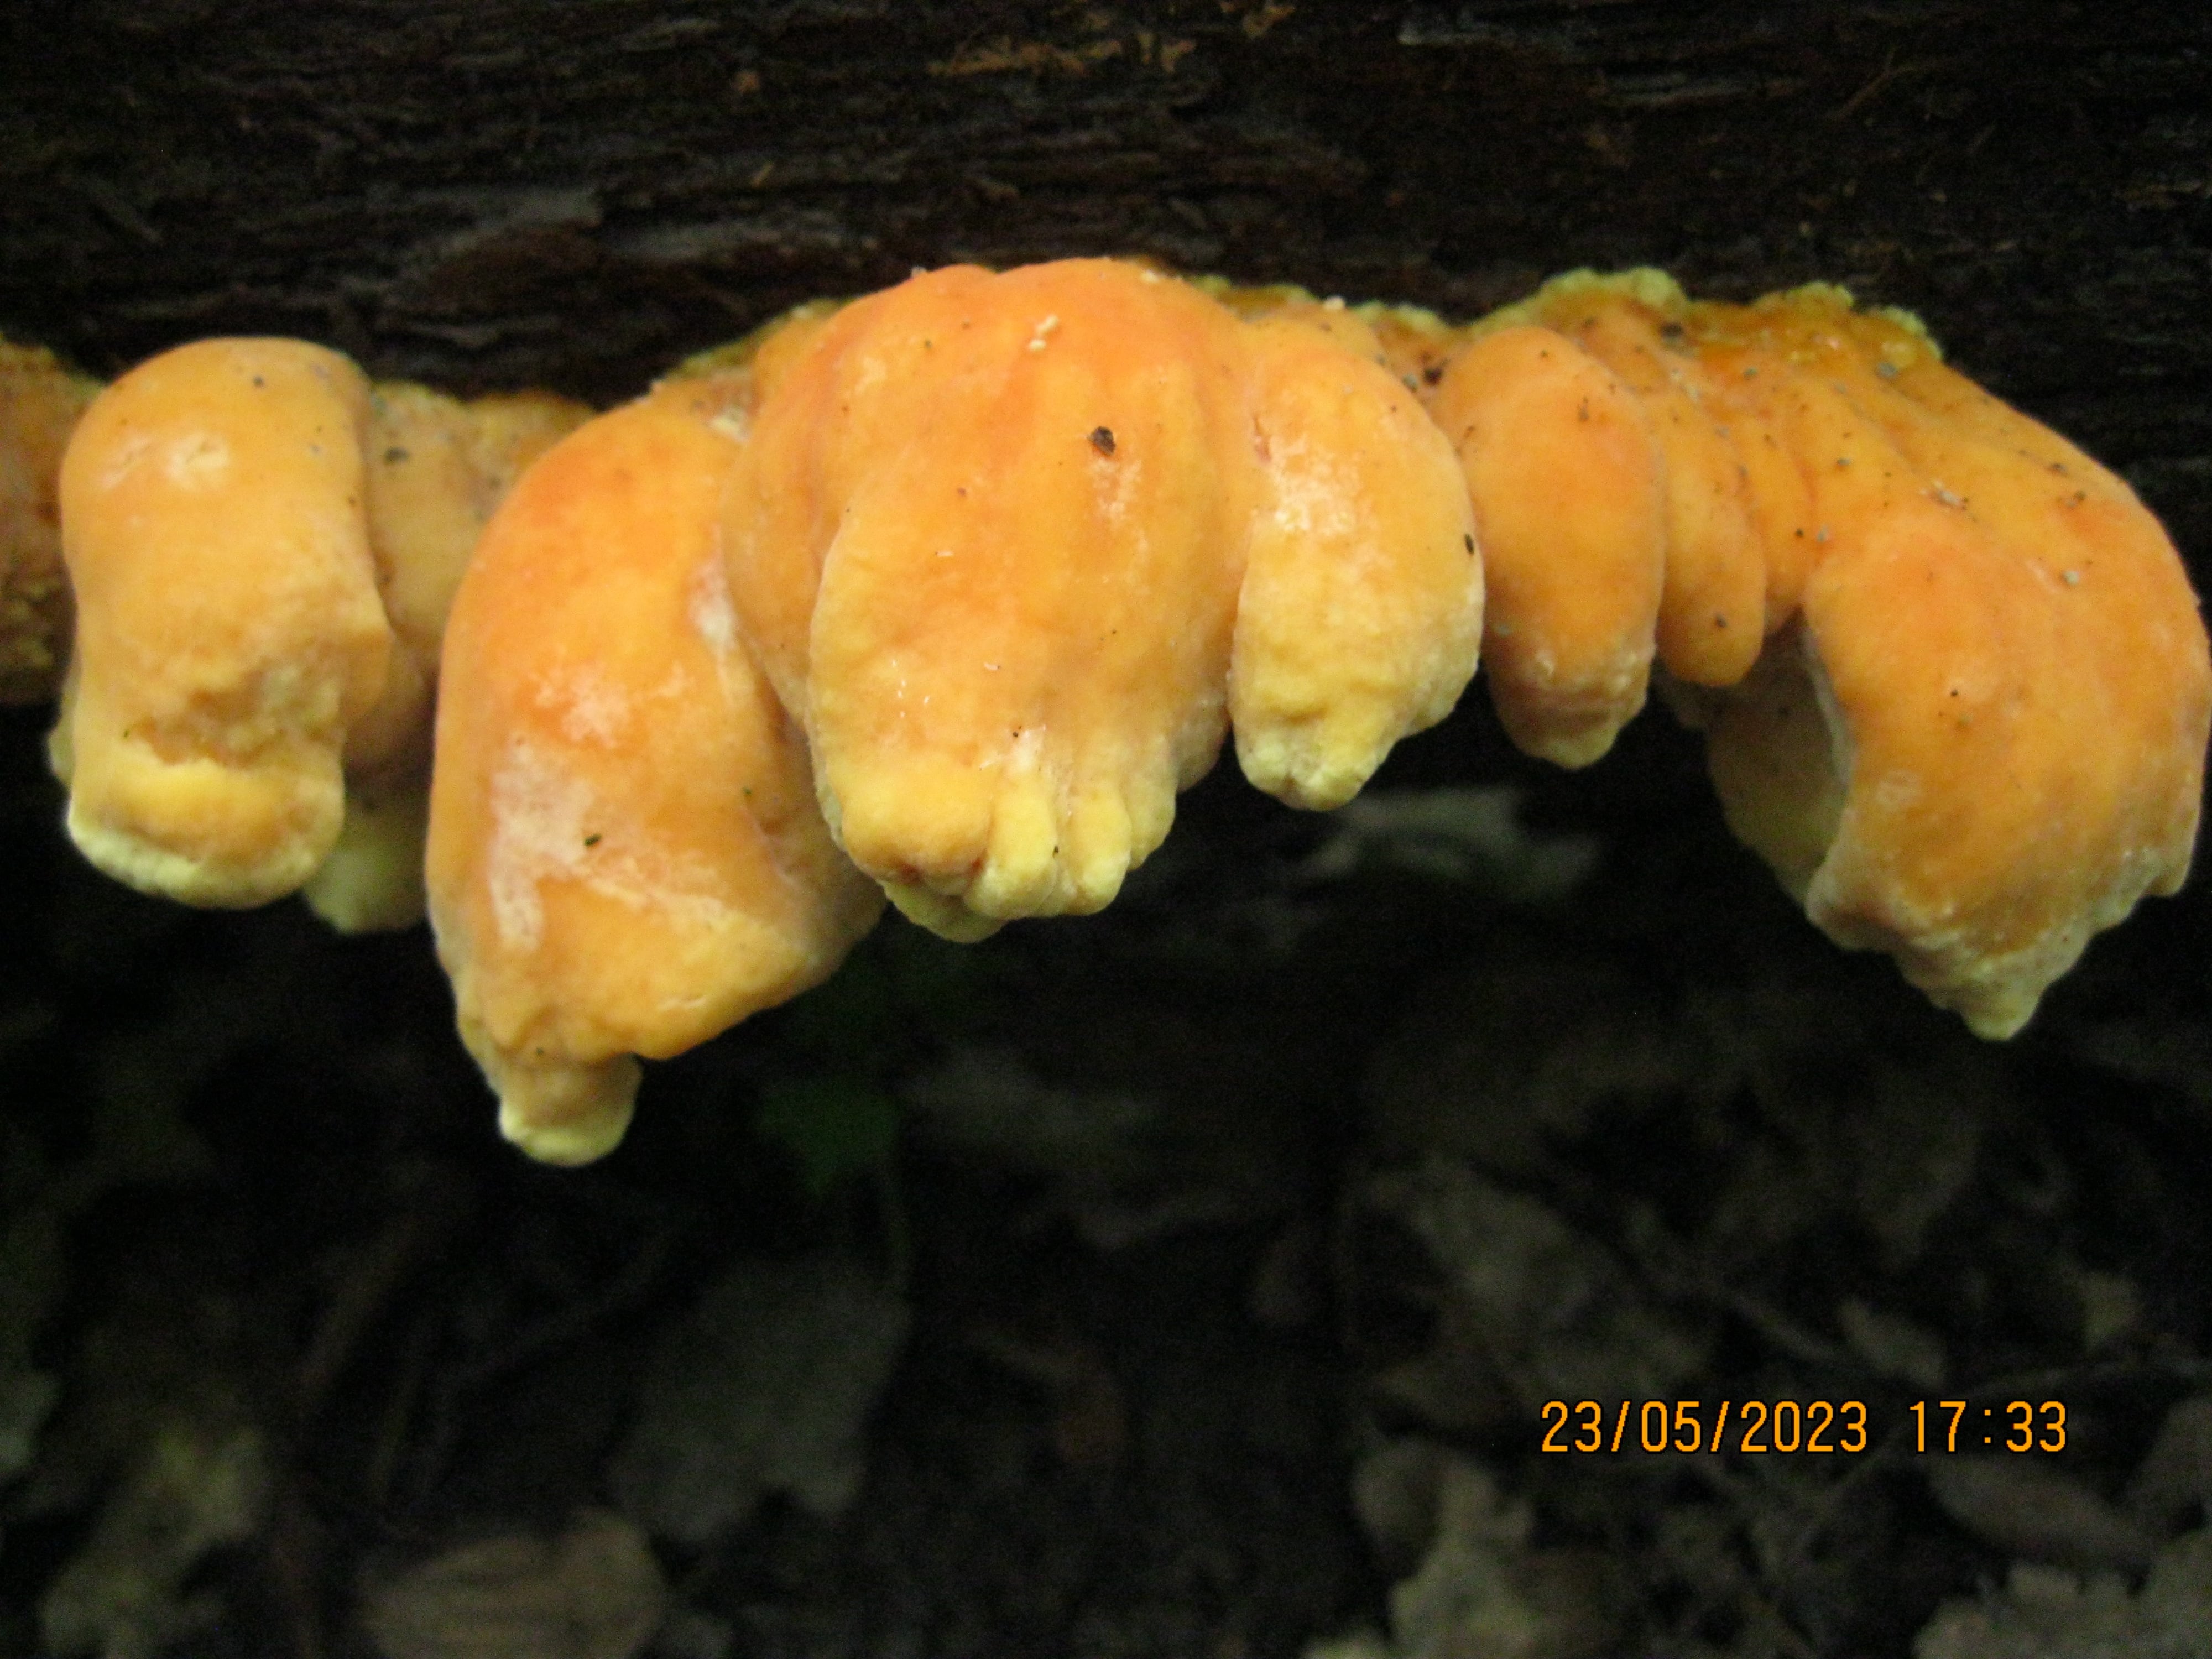 Трутовик серно-желтый весенний съедобный гриб из московского леса. Laetiporus sulphureus